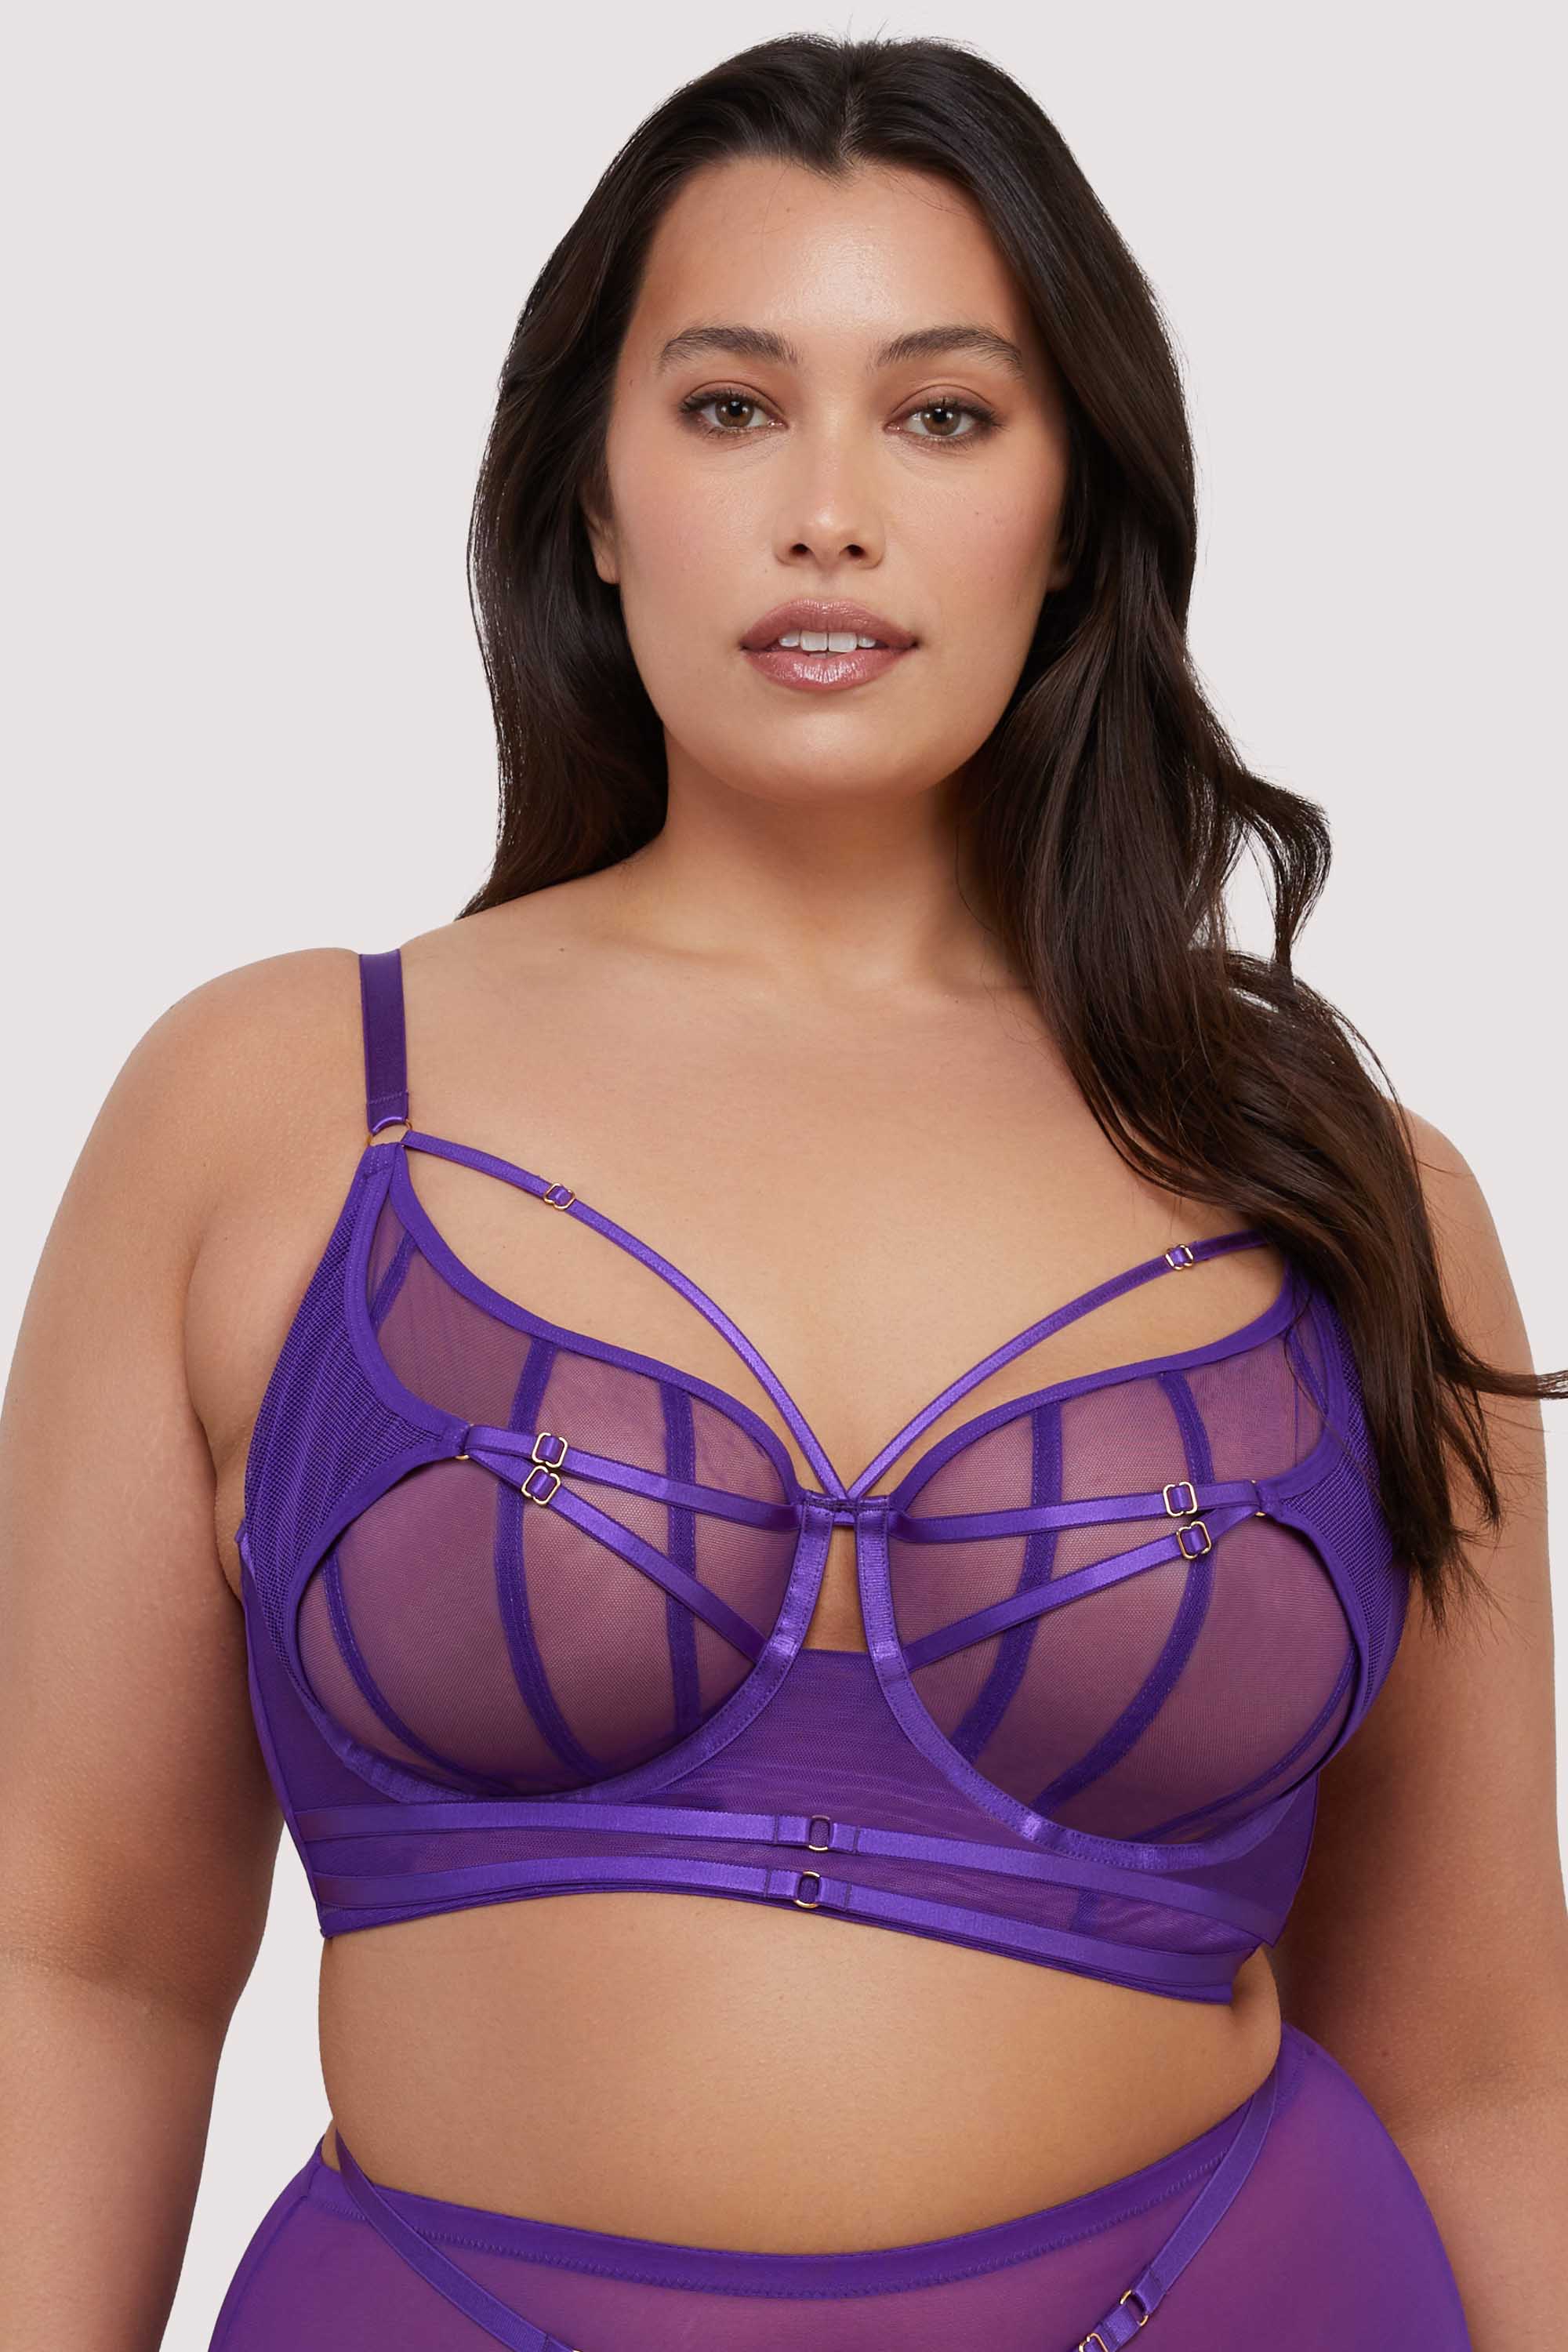 model wears purple sheer mesh bra with straps